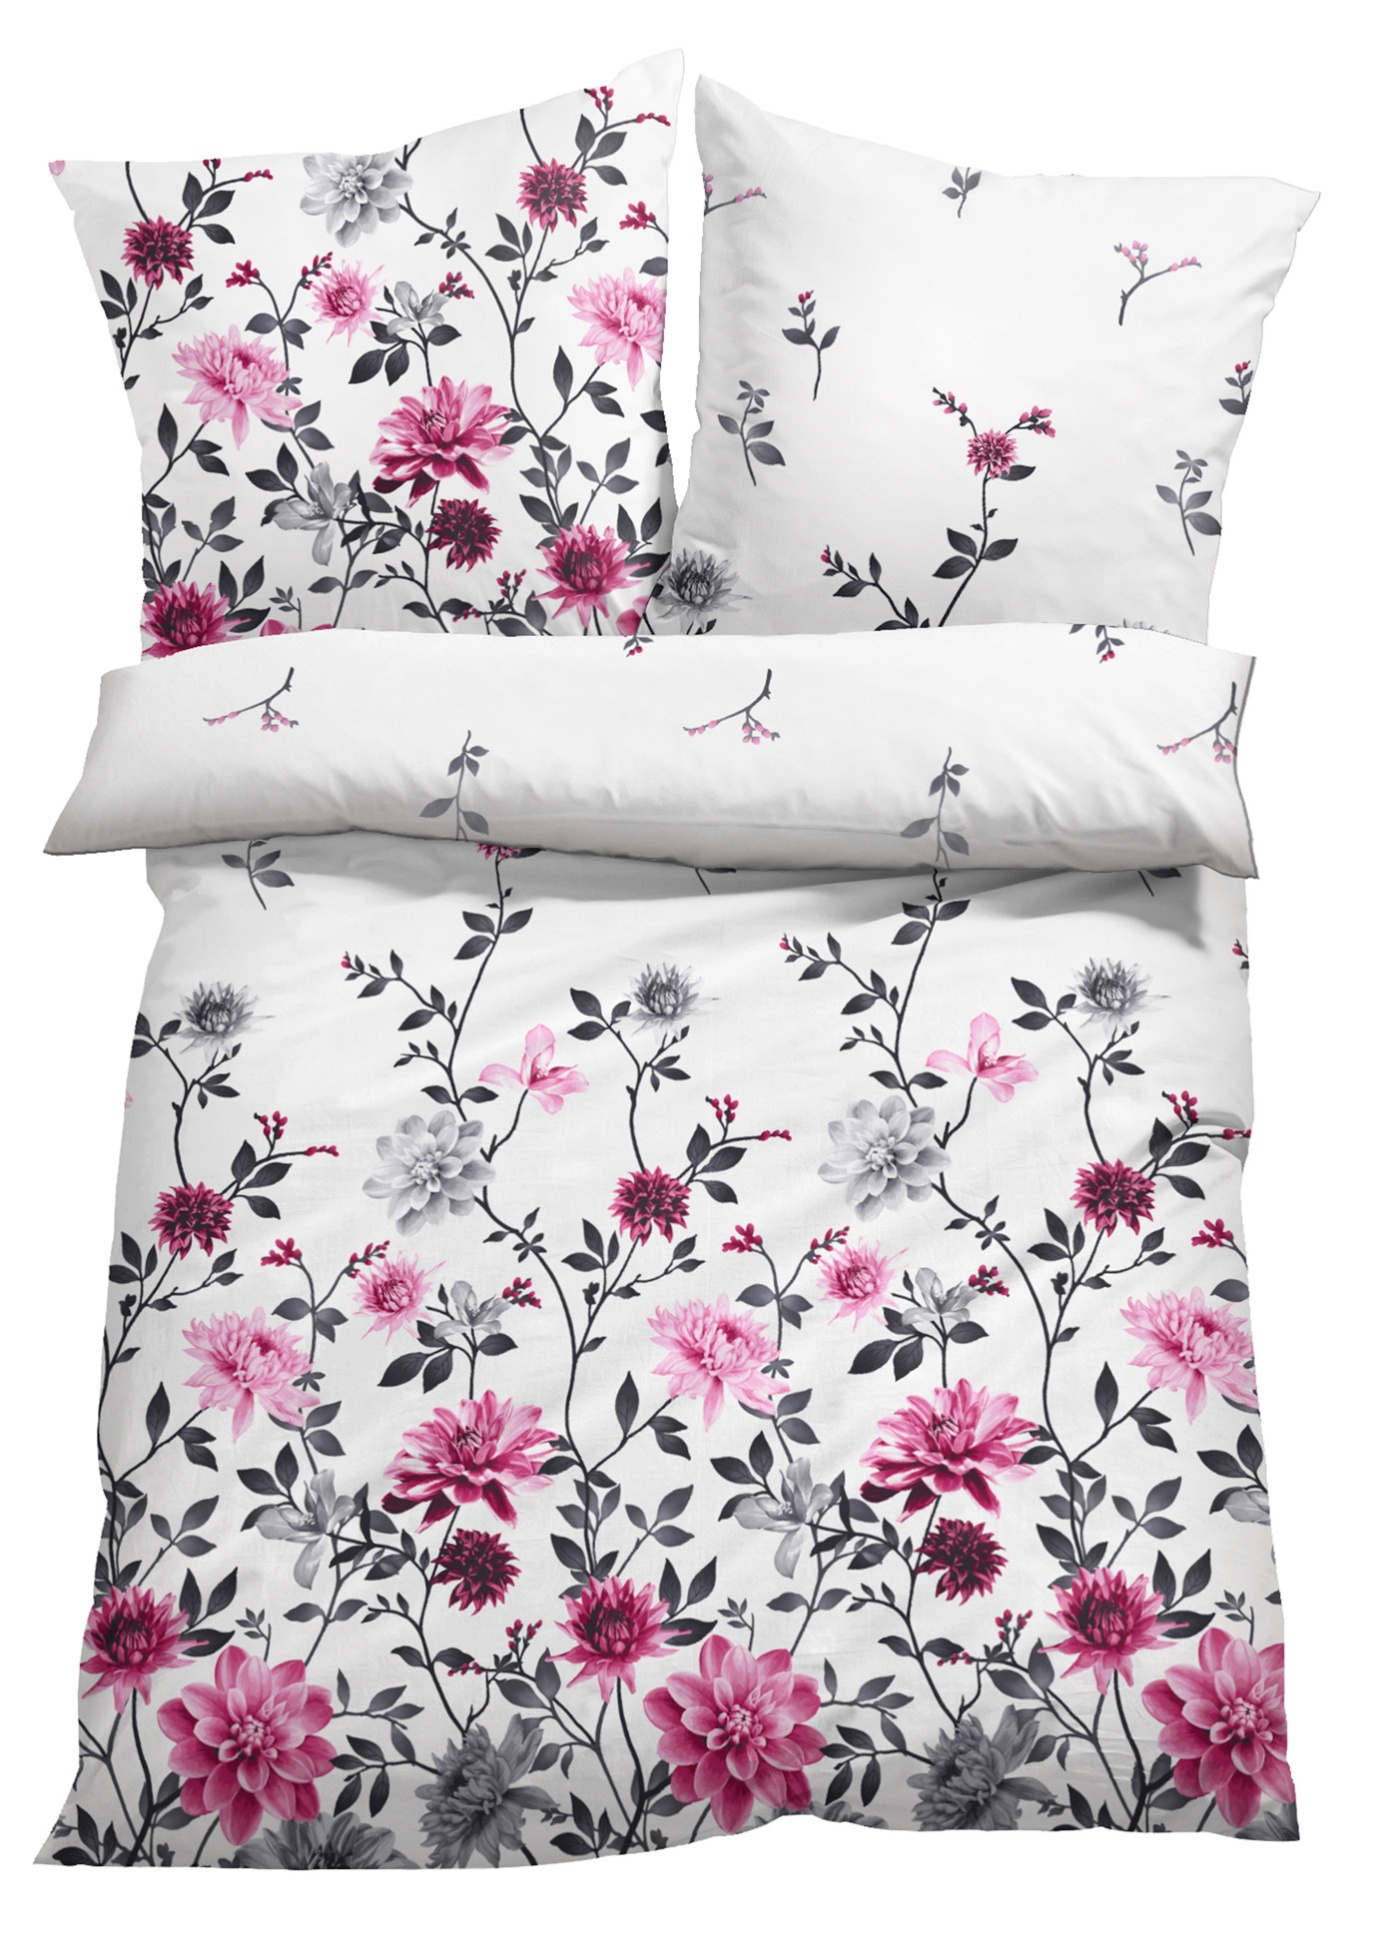 Parure de lit avec motif floral